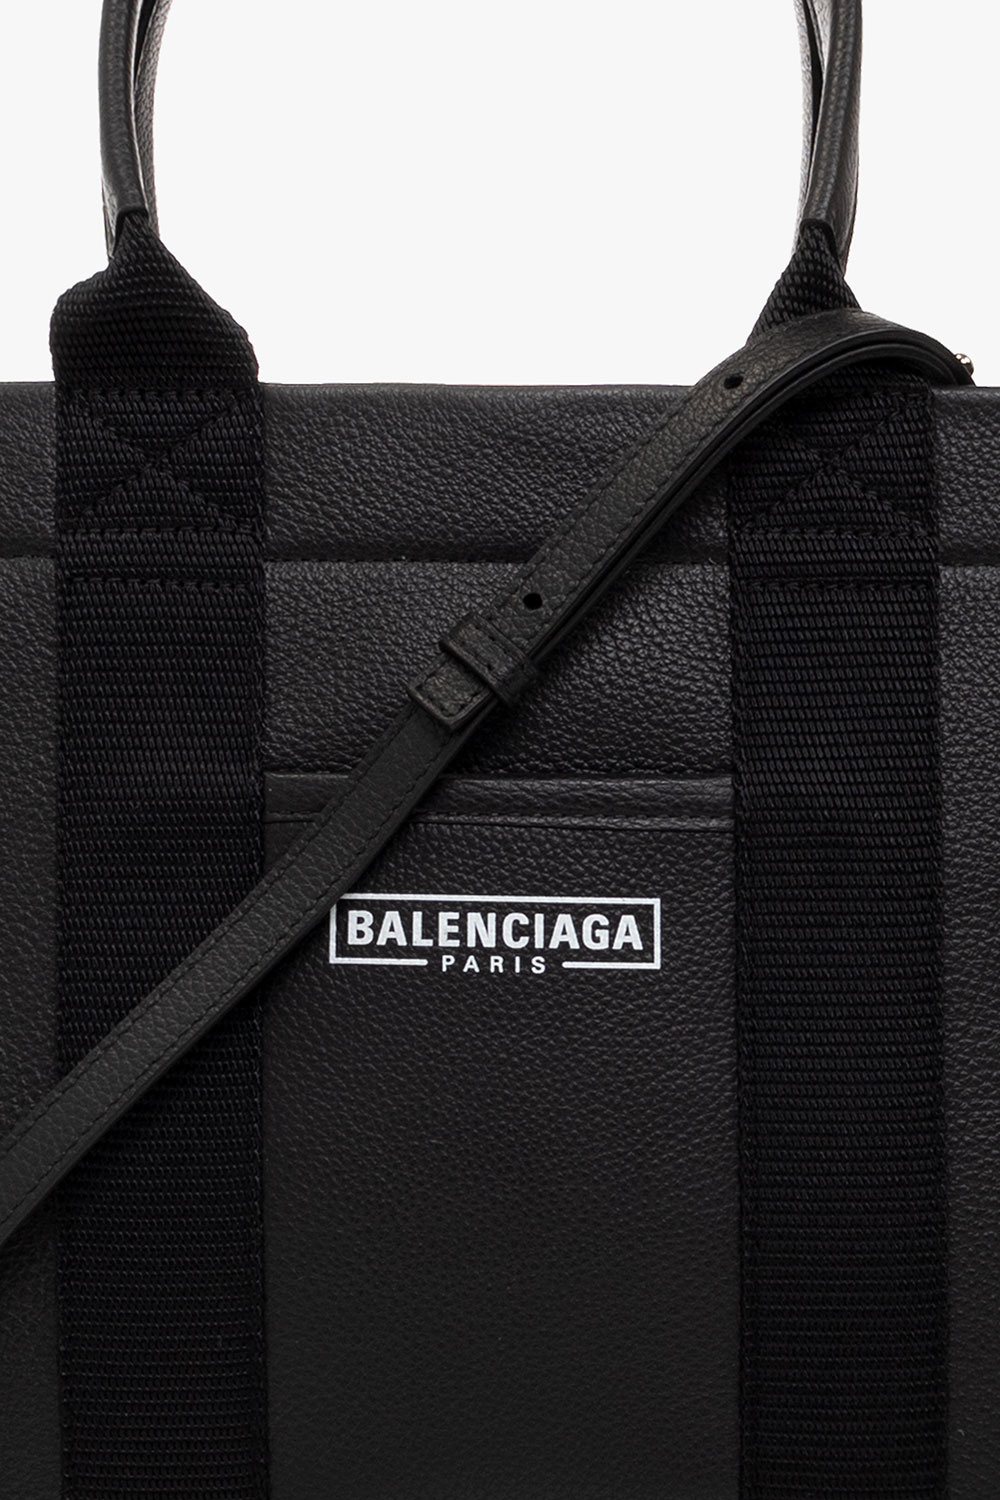 Balenciaga ‘Hardware’ shopper bag